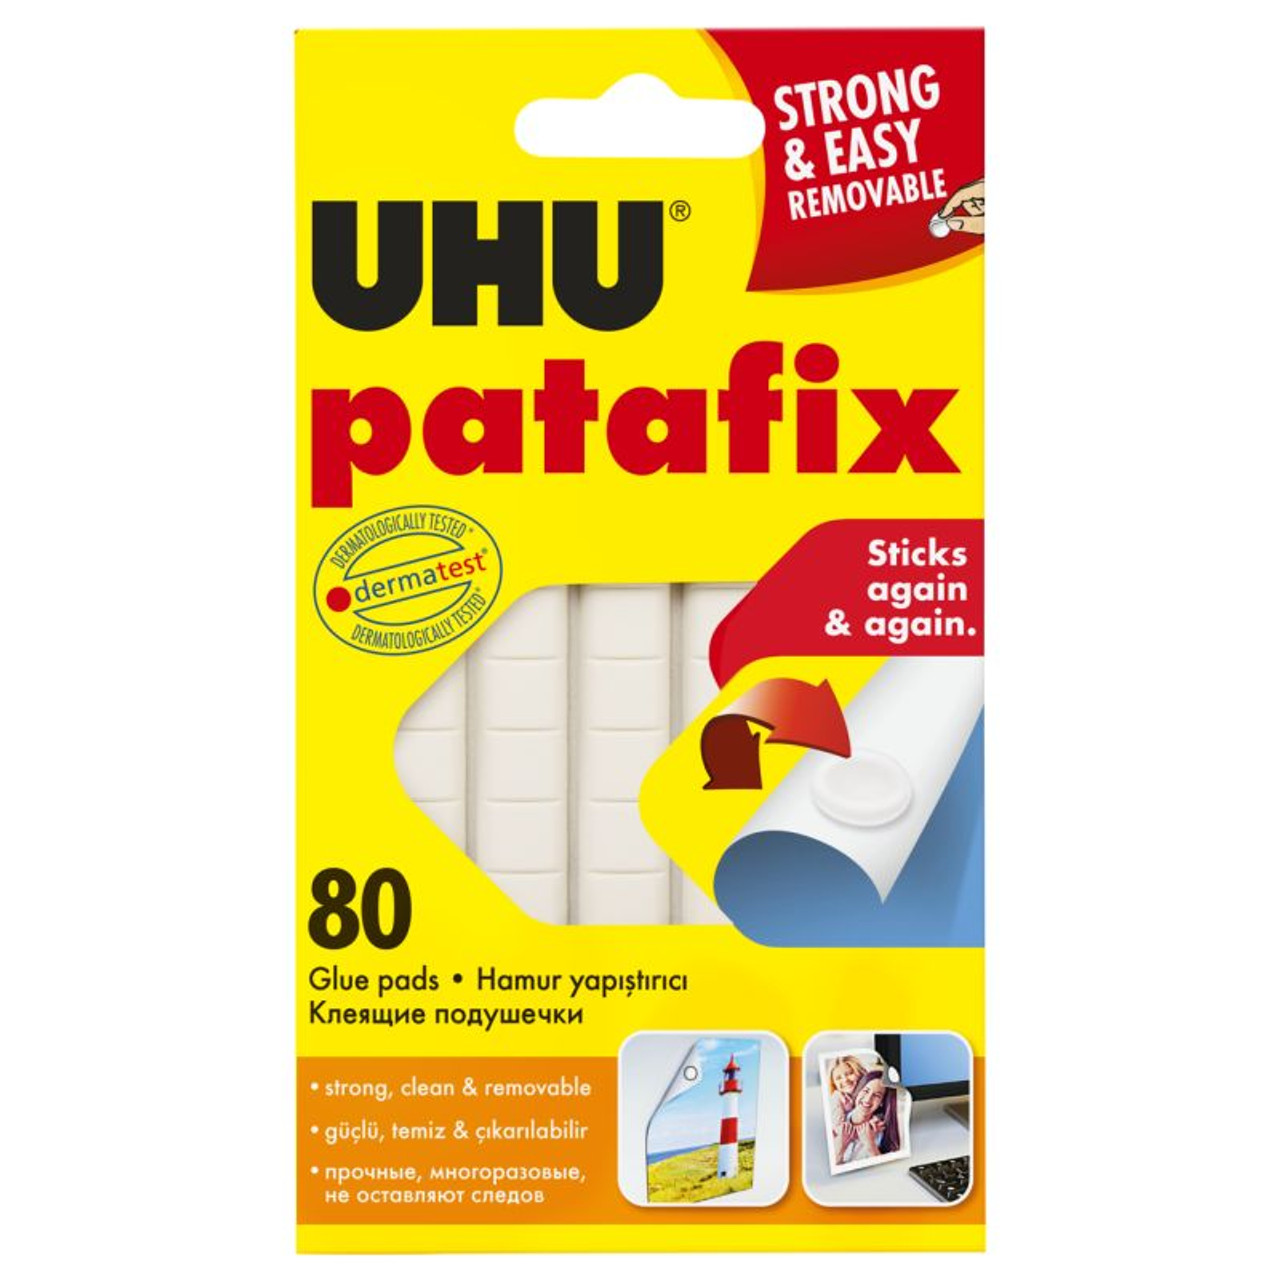  UHU Patafix, 38150 : Arts, Crafts & Sewing